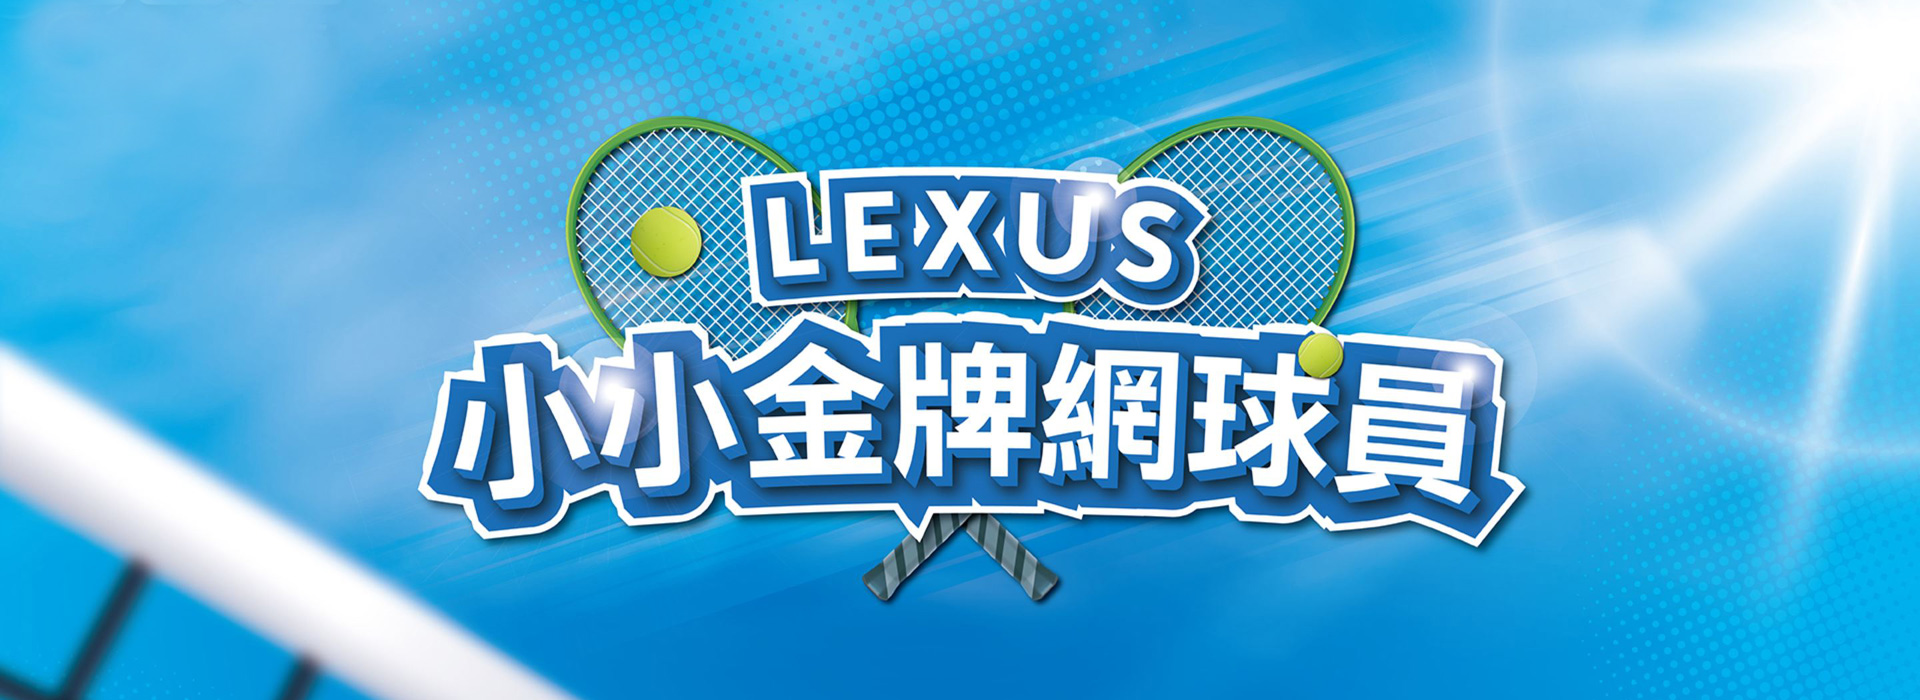 國都LEXUS｜Lexus攜手盧彥勳推出小小金牌網球員活動